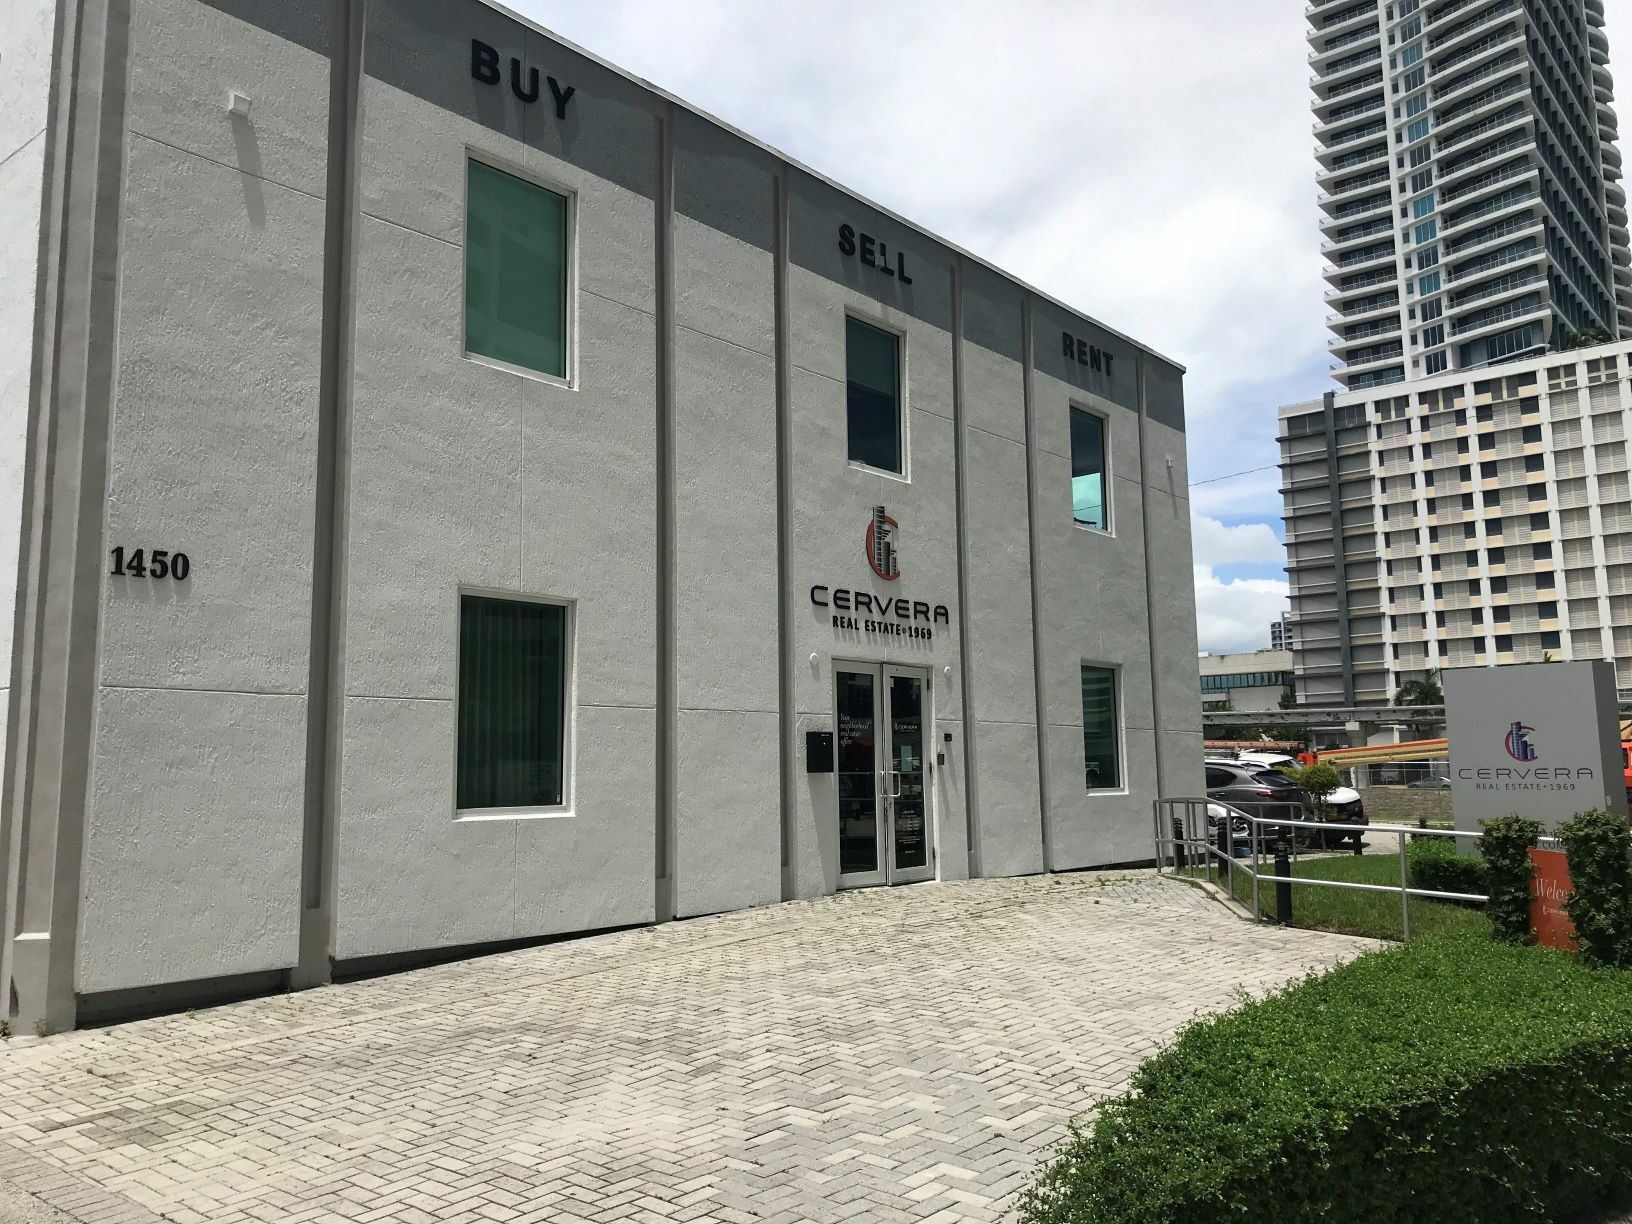 Corporate,Miami,Cervera Real Estate